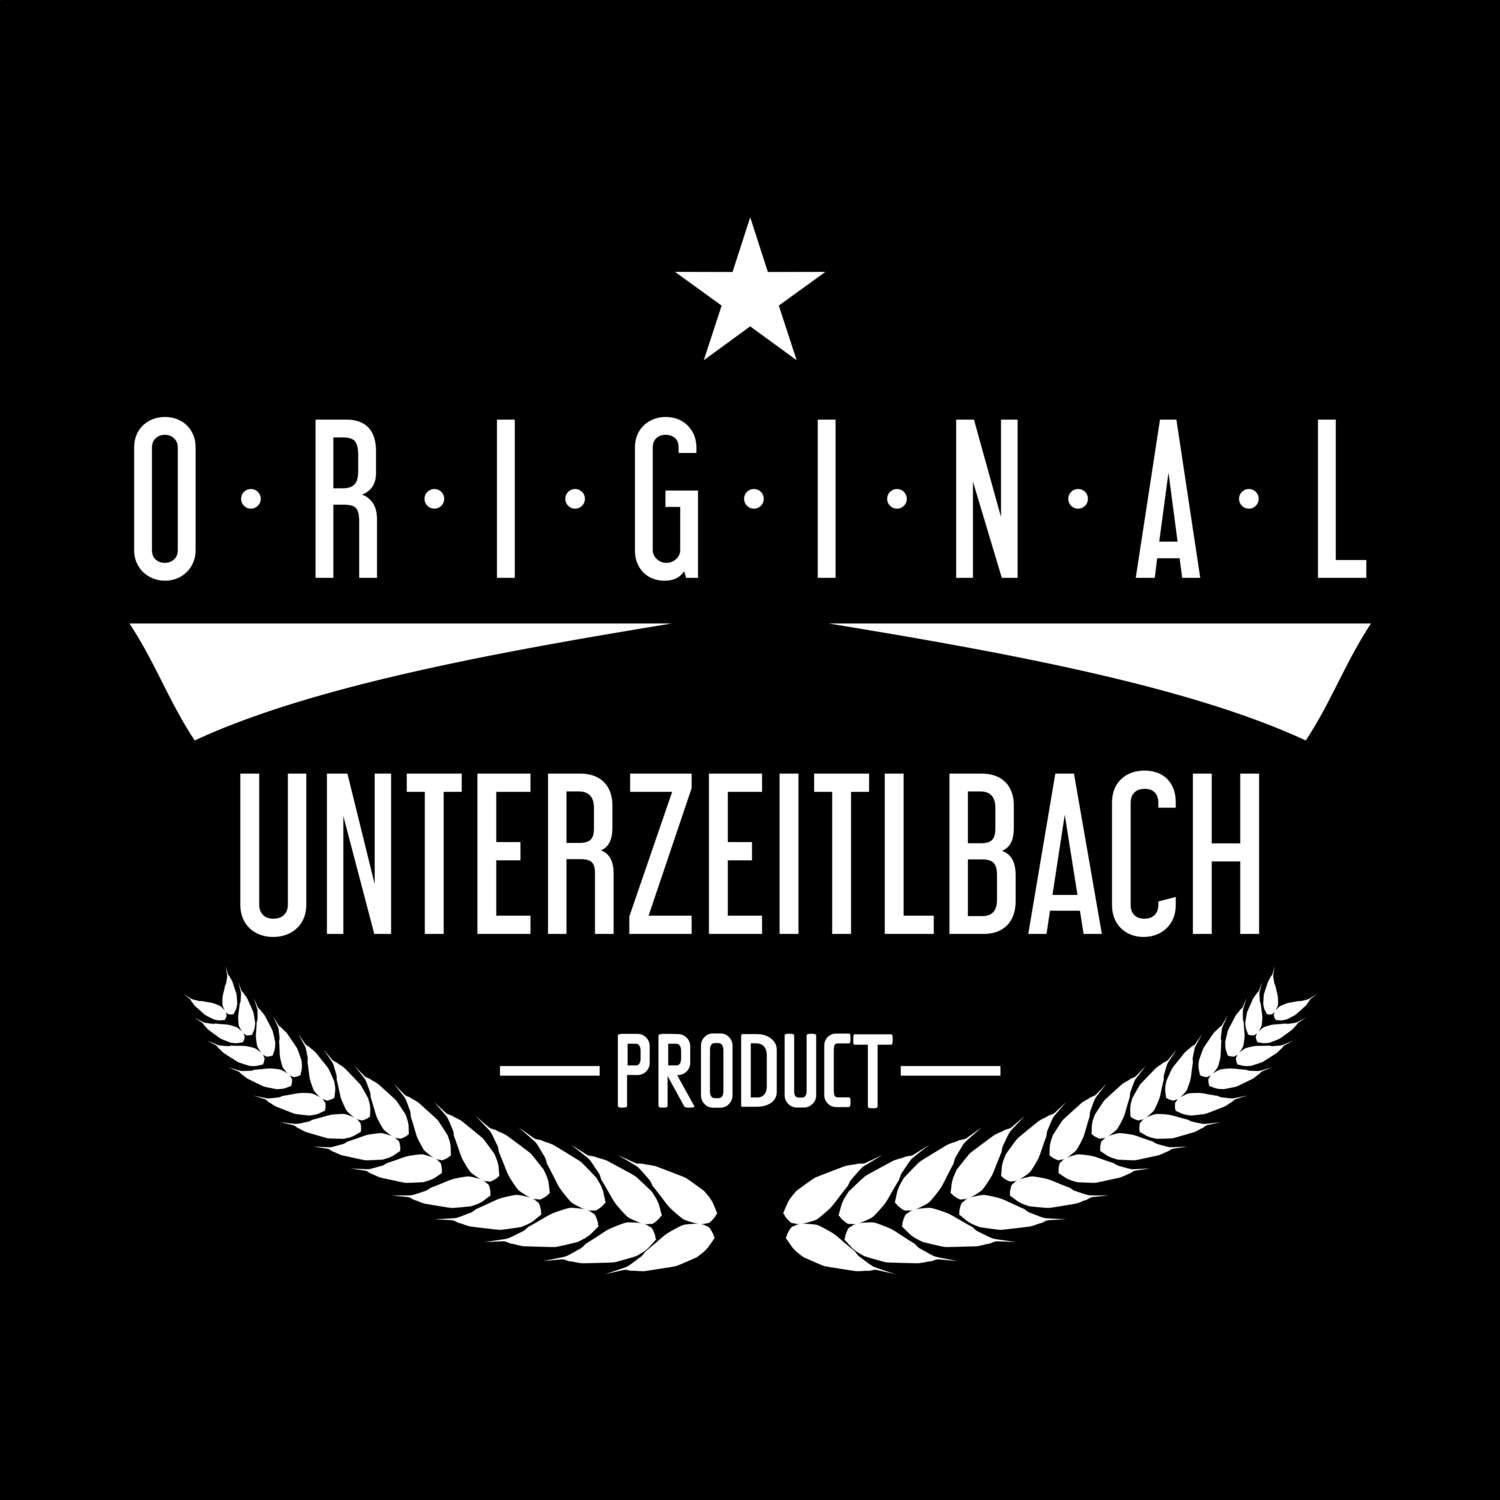 Unterzeitlbach T-Shirt »Original Product«